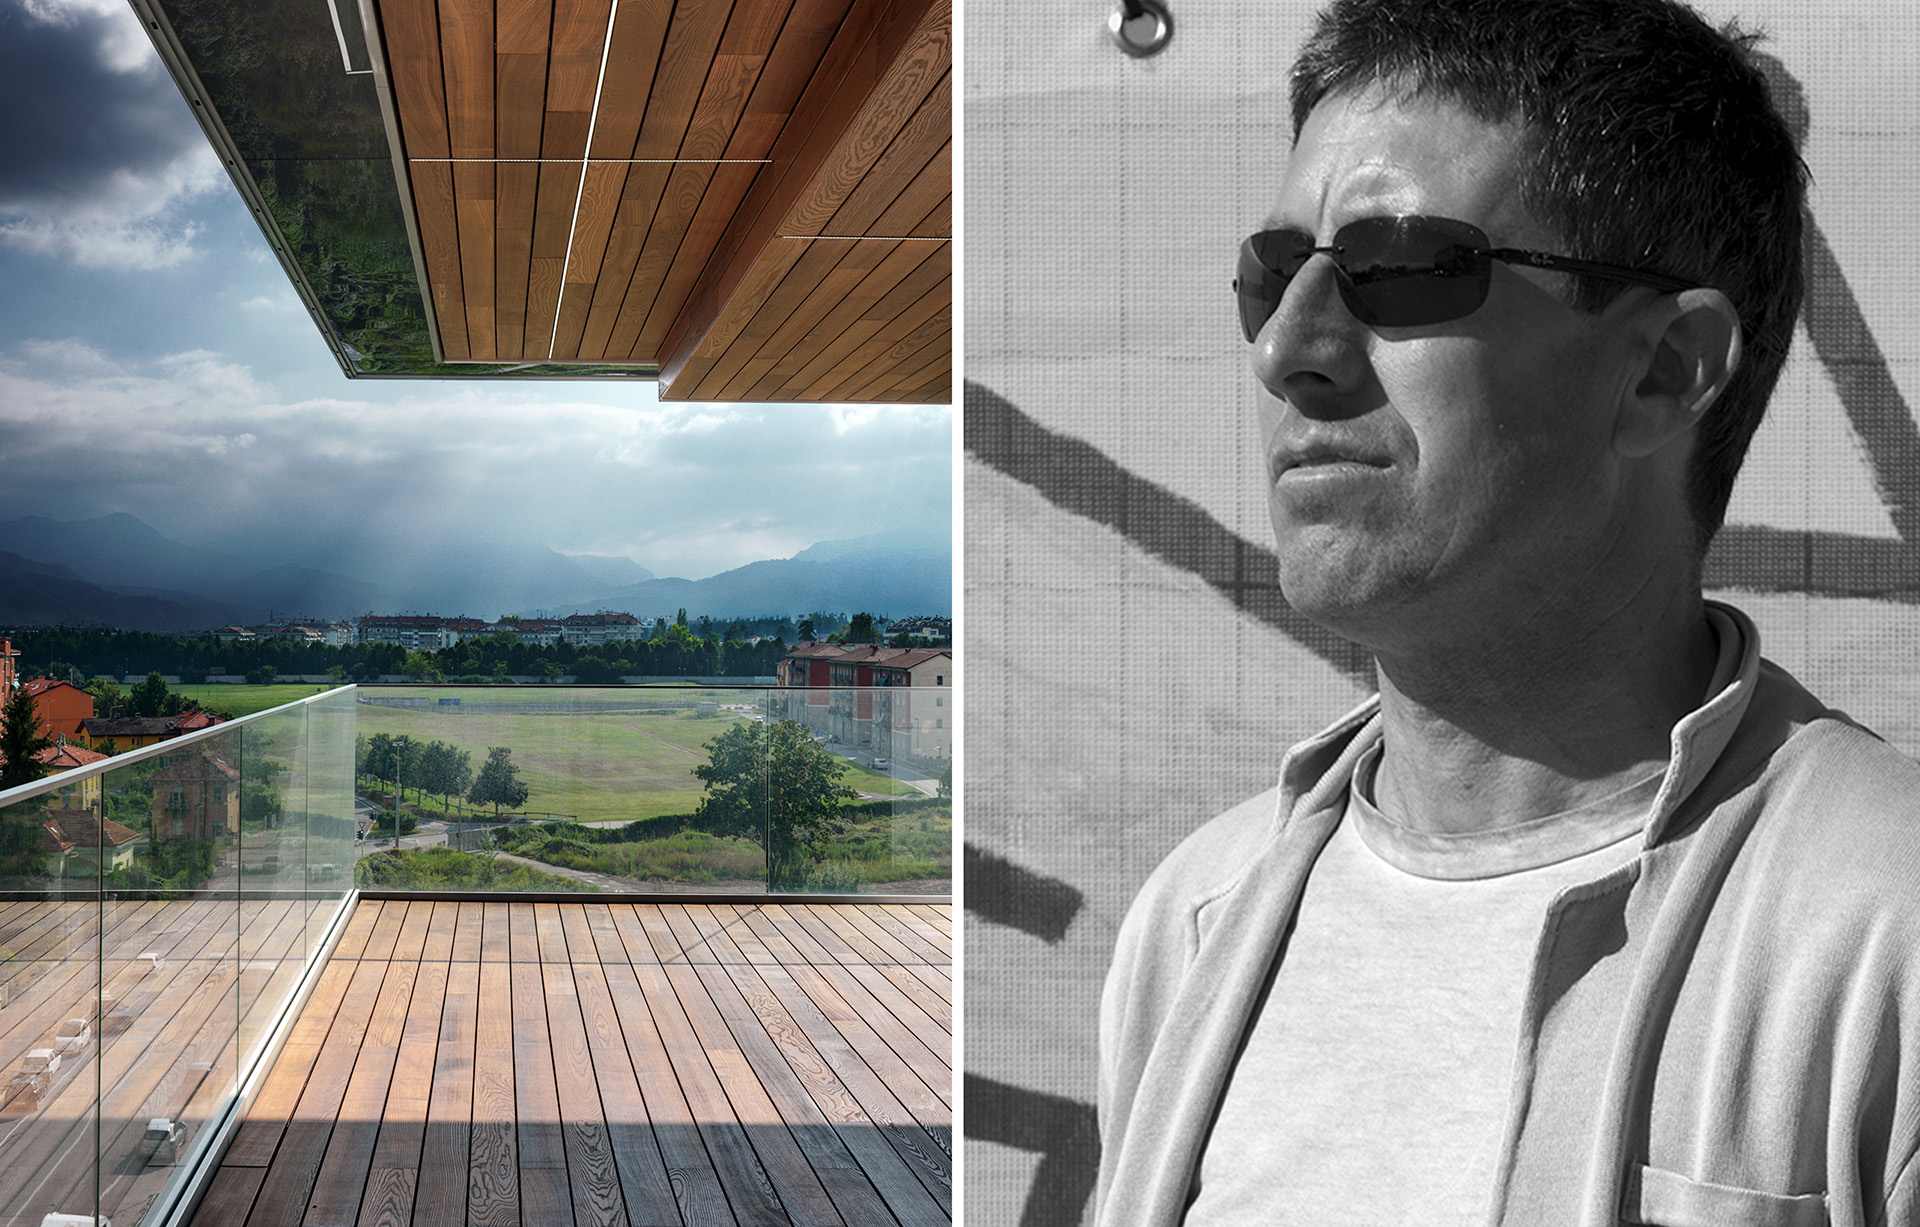 Architetture Trasparenti & Vetro nel progetto architettonico: residenziale + uffici per l'edificio F5 a Cuneo con vista sulle Alpi